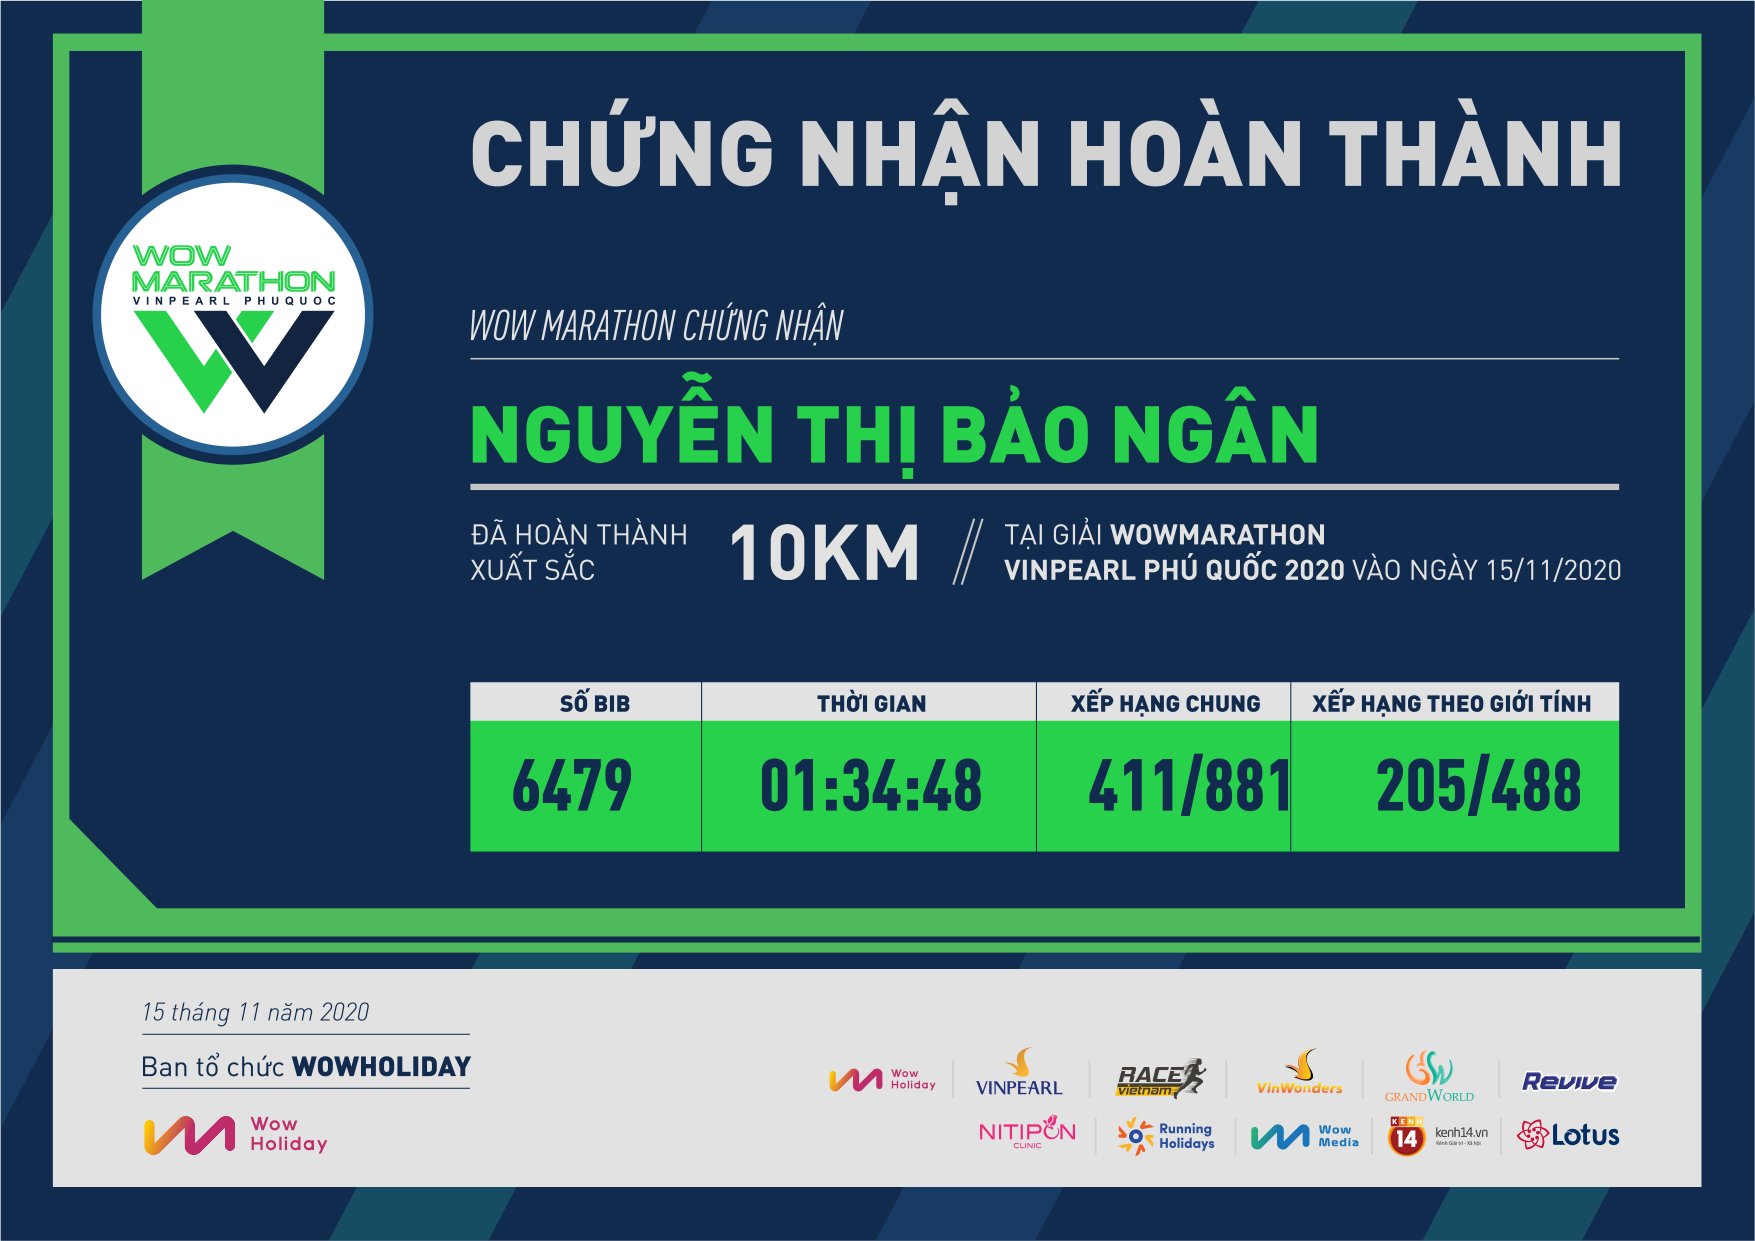 6479 - Nguyễn Thị Bảo Ngân